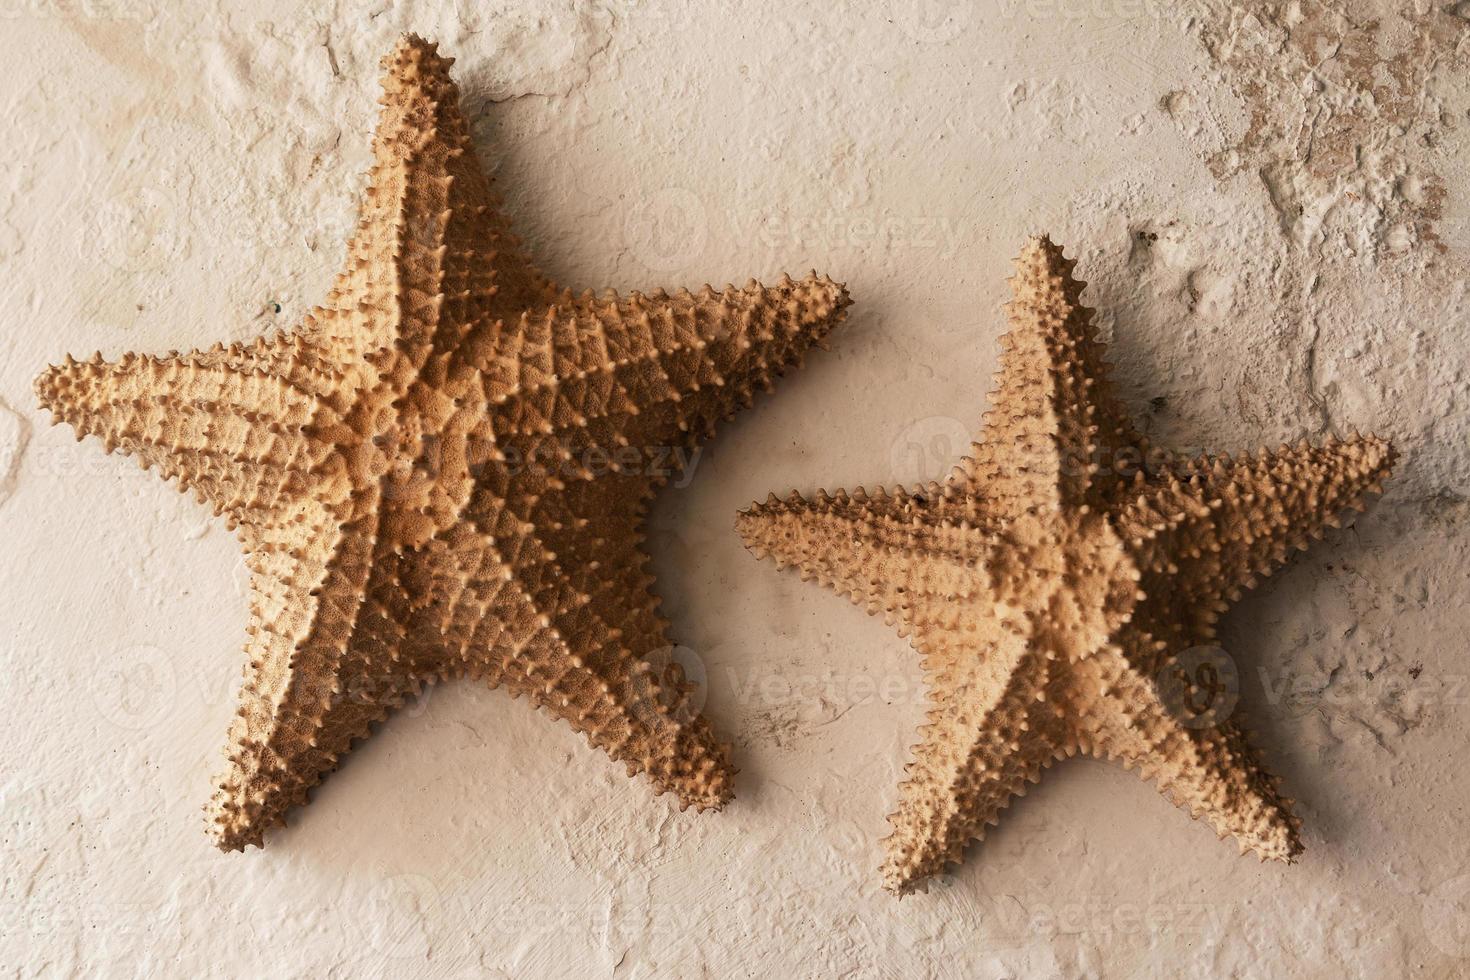 estrellas de mar colgadas como decoración en la pared 16235606